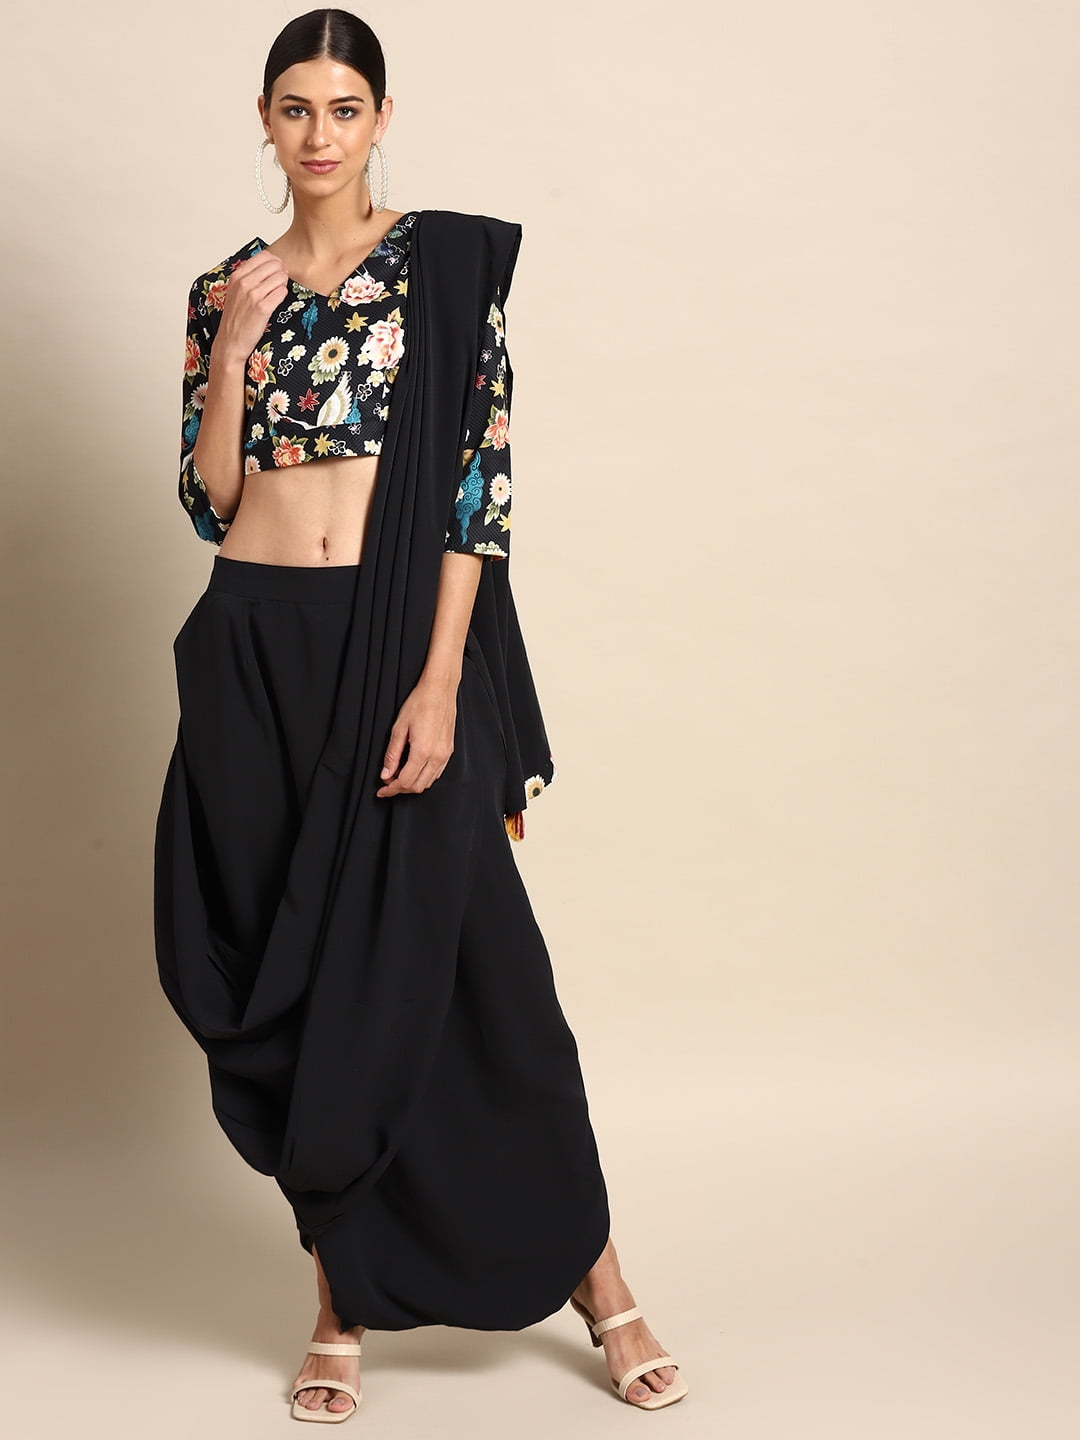 Cargo + short kurti | Desi fashion casual, Quick outfits, Casual indian  fashion